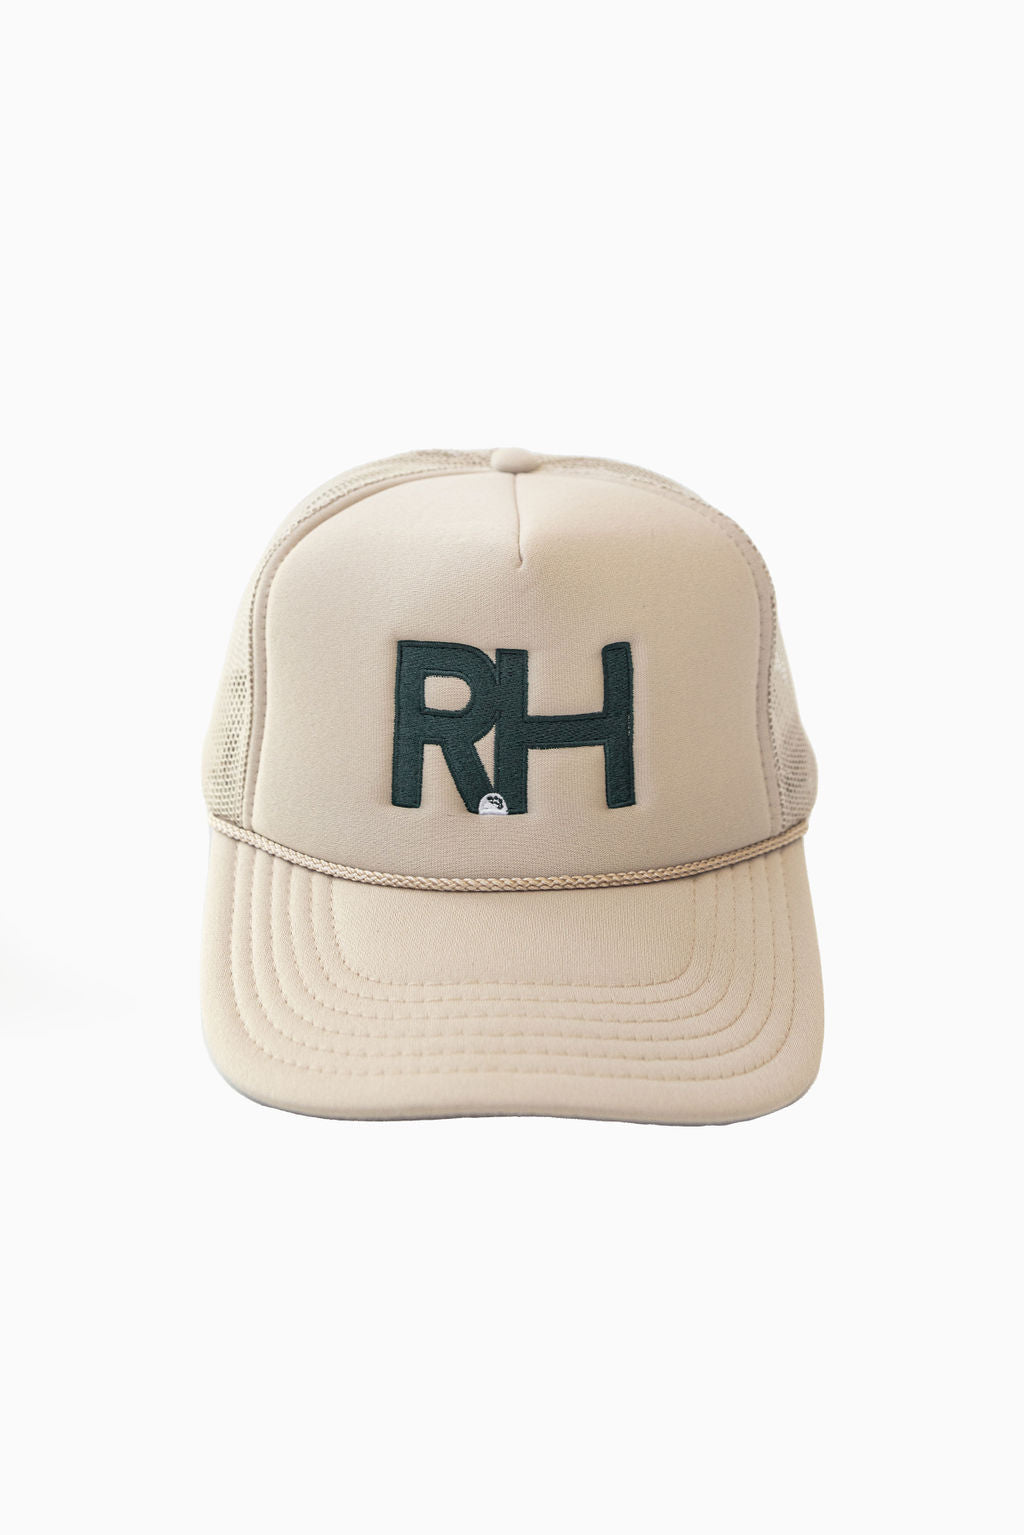 RH Golf Trucker Hat in Tan – Recreational Habits